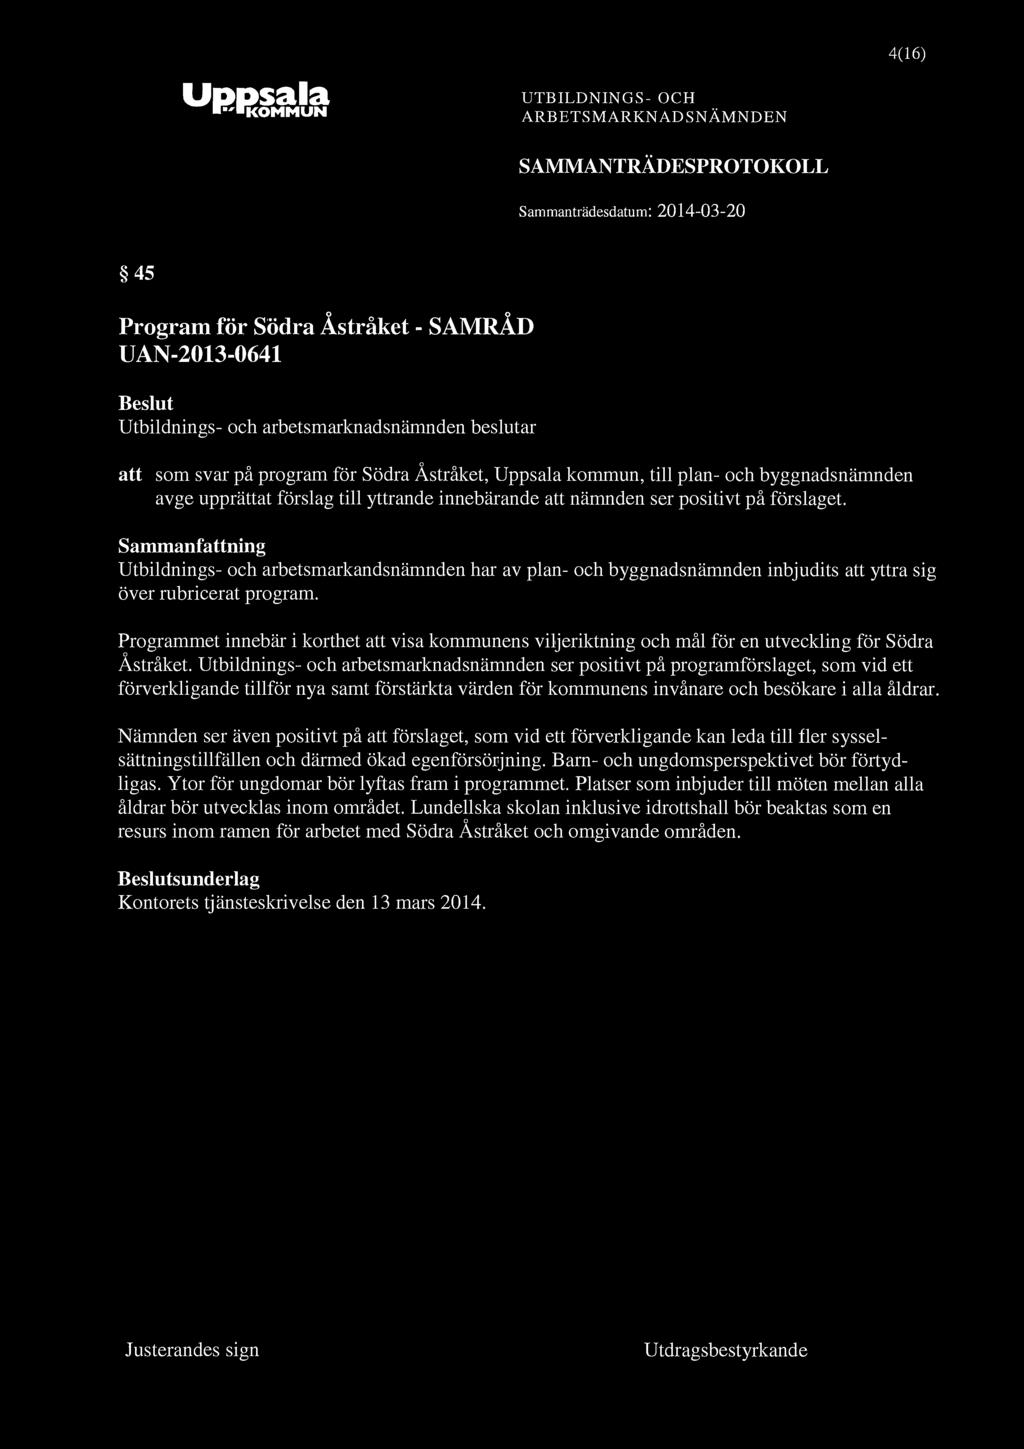 "KOMMUN 4(16) 45 Program för Södra Åstråket - SAMRÅD UAN-2013-0641 att som svar på program för Södra Åstråket, Uppsala kommun, till plan- och byggnadsnämnden avge upprättat förslag till yttrande